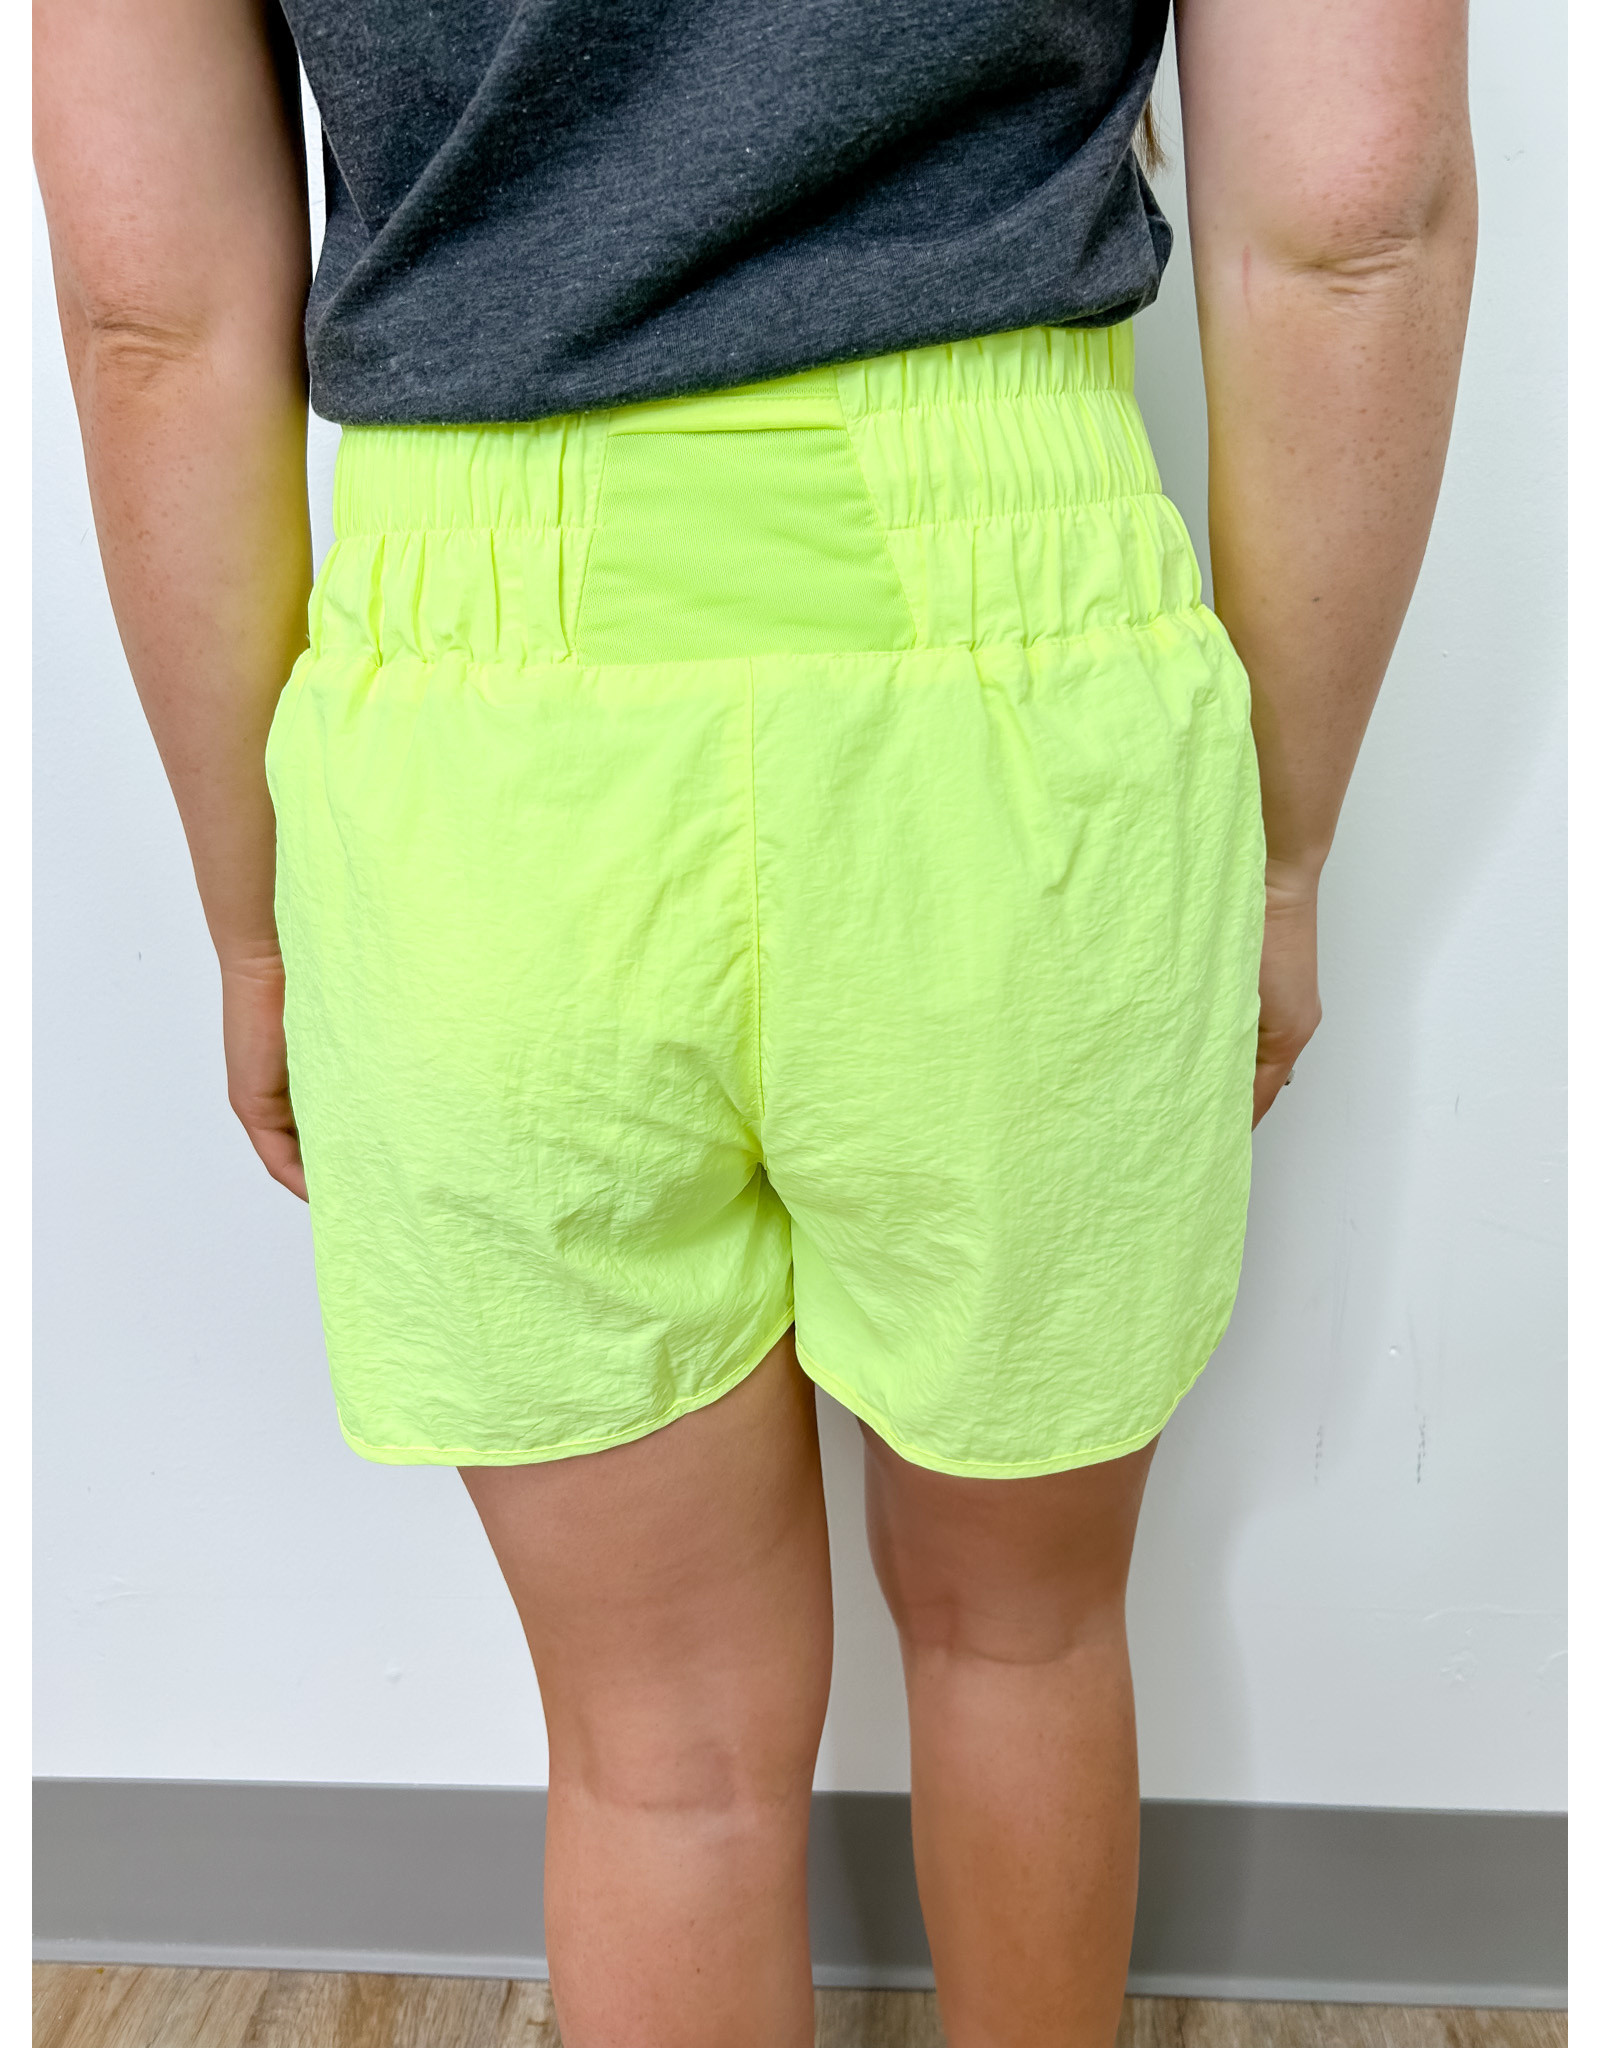 Windbreaker Shorts - Neon Lime